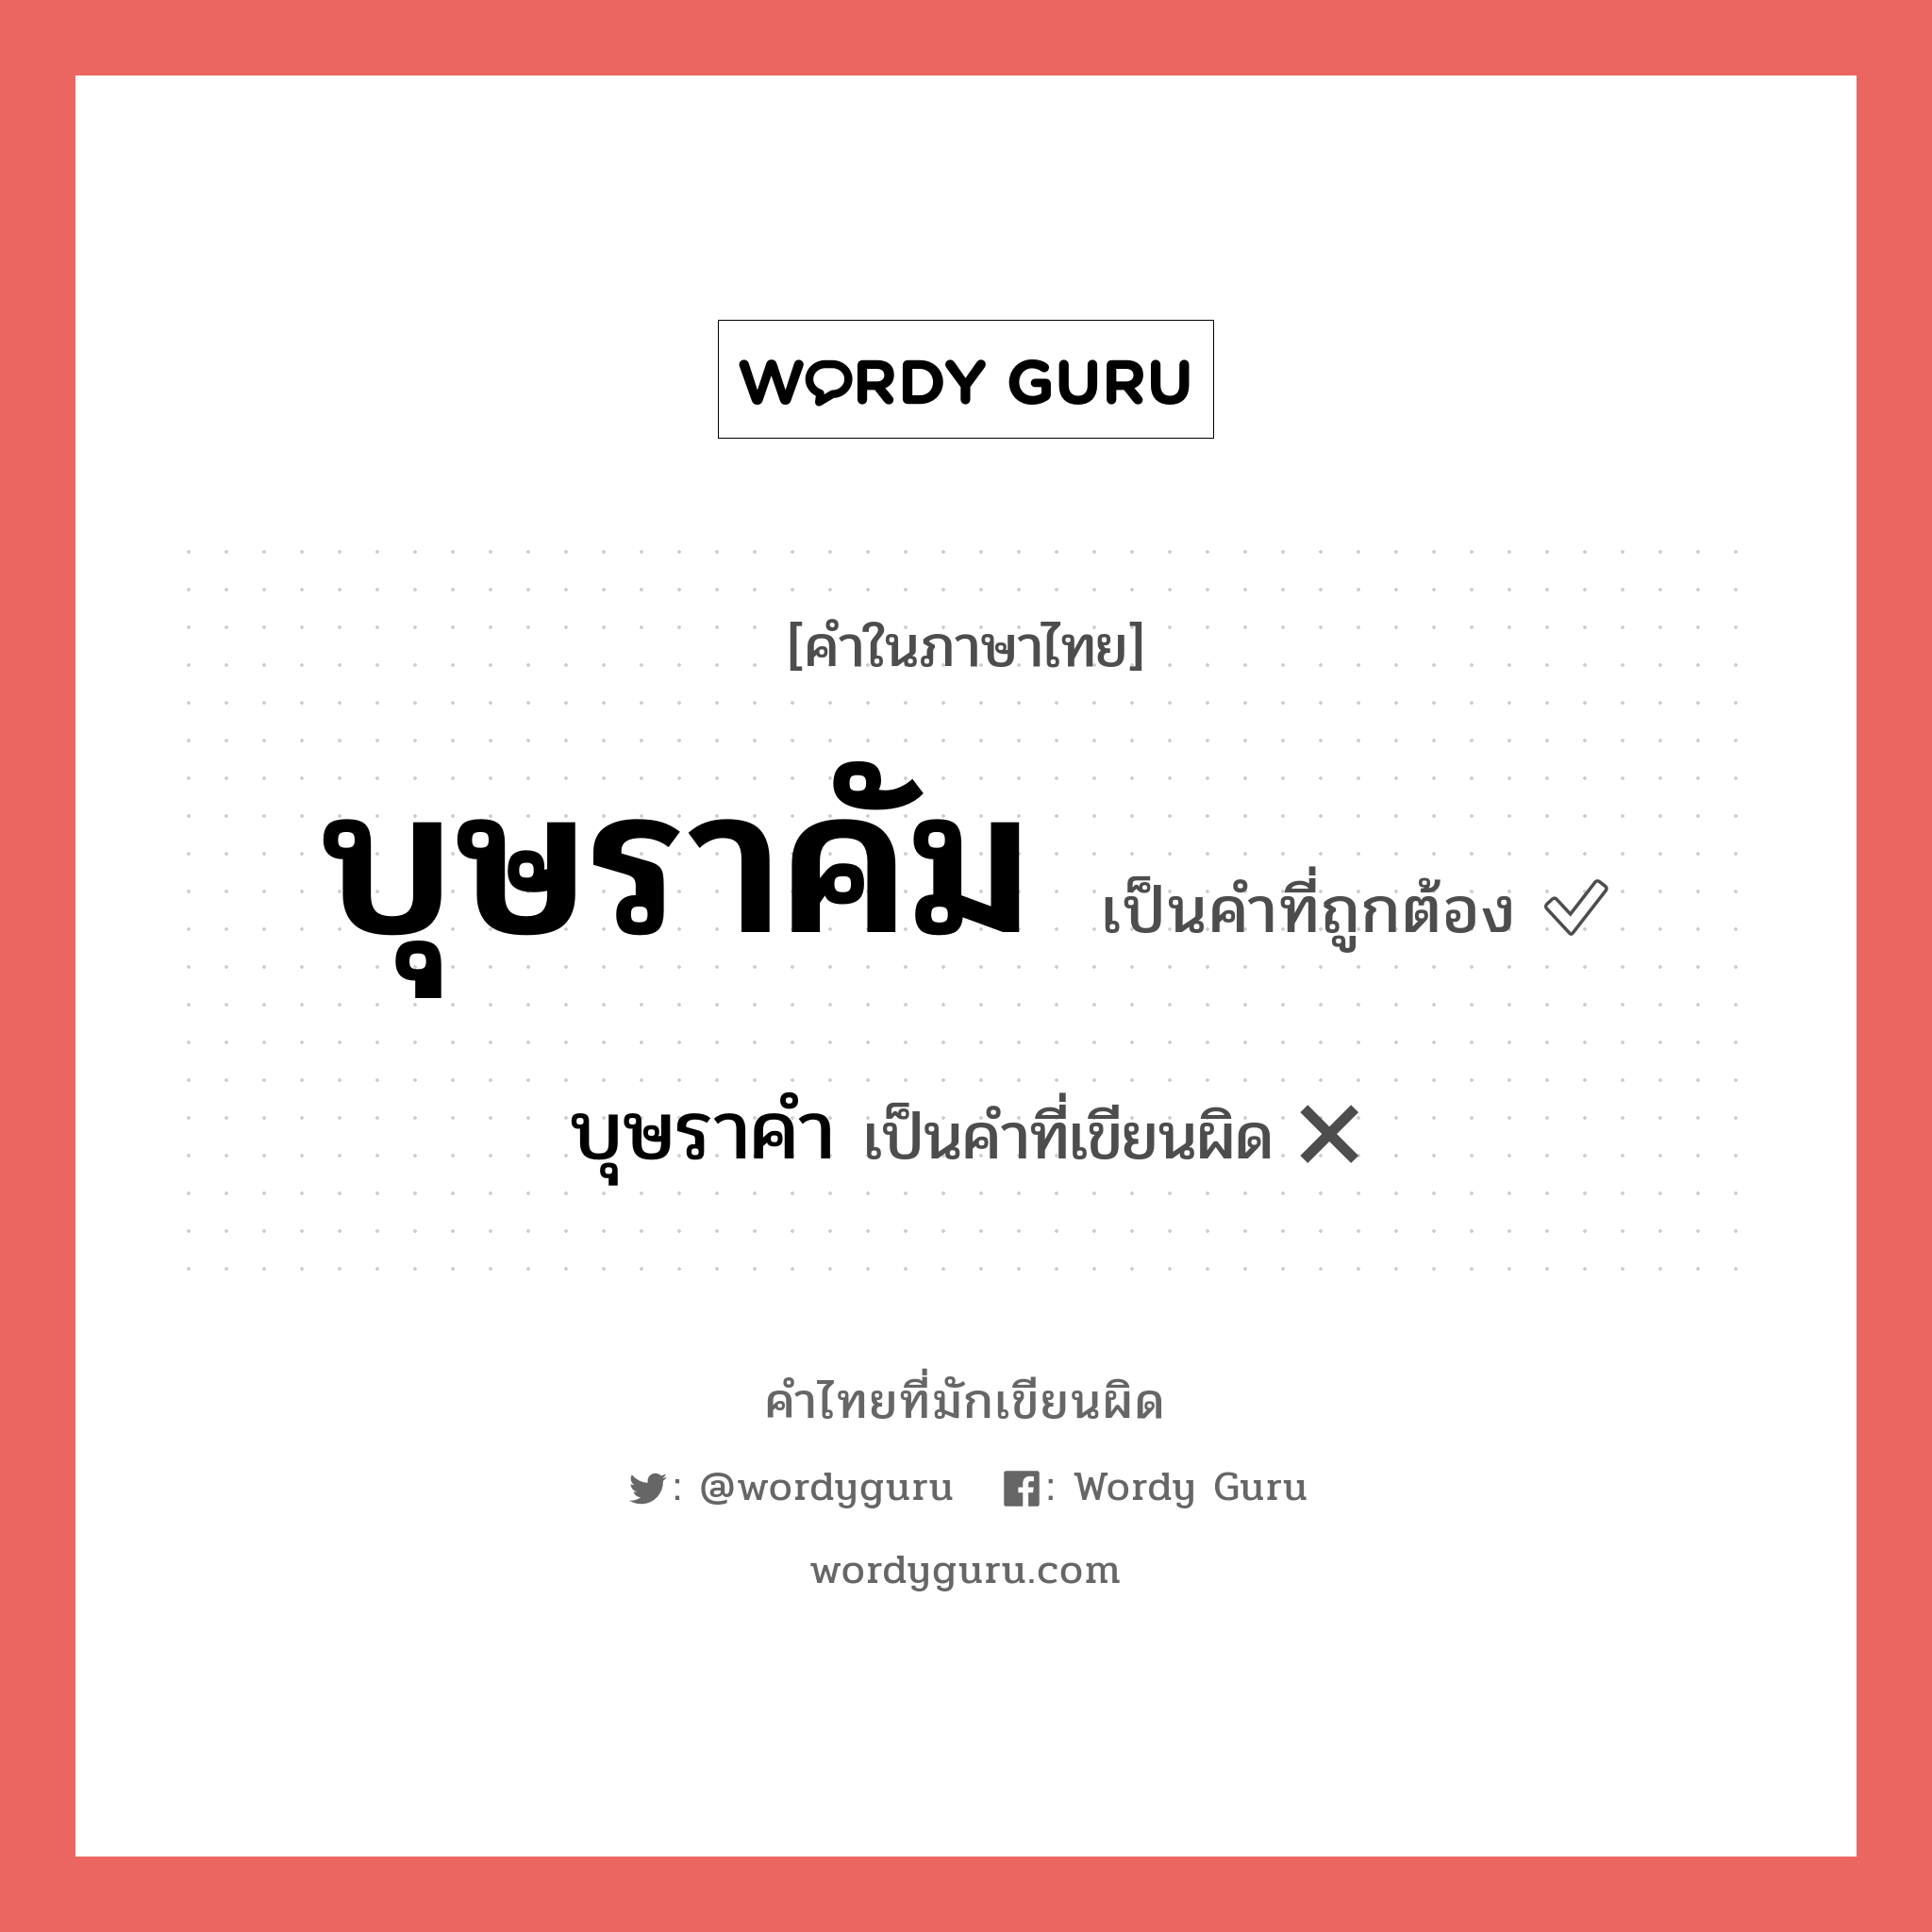 บุษราคัม หรือ บุษราคำ เขียนยังไง? คำไหนเขียนถูก?, คำในภาษาไทยที่มักเขียนผิด บุษราคัม คำที่ผิด ❌ บุษราคำ